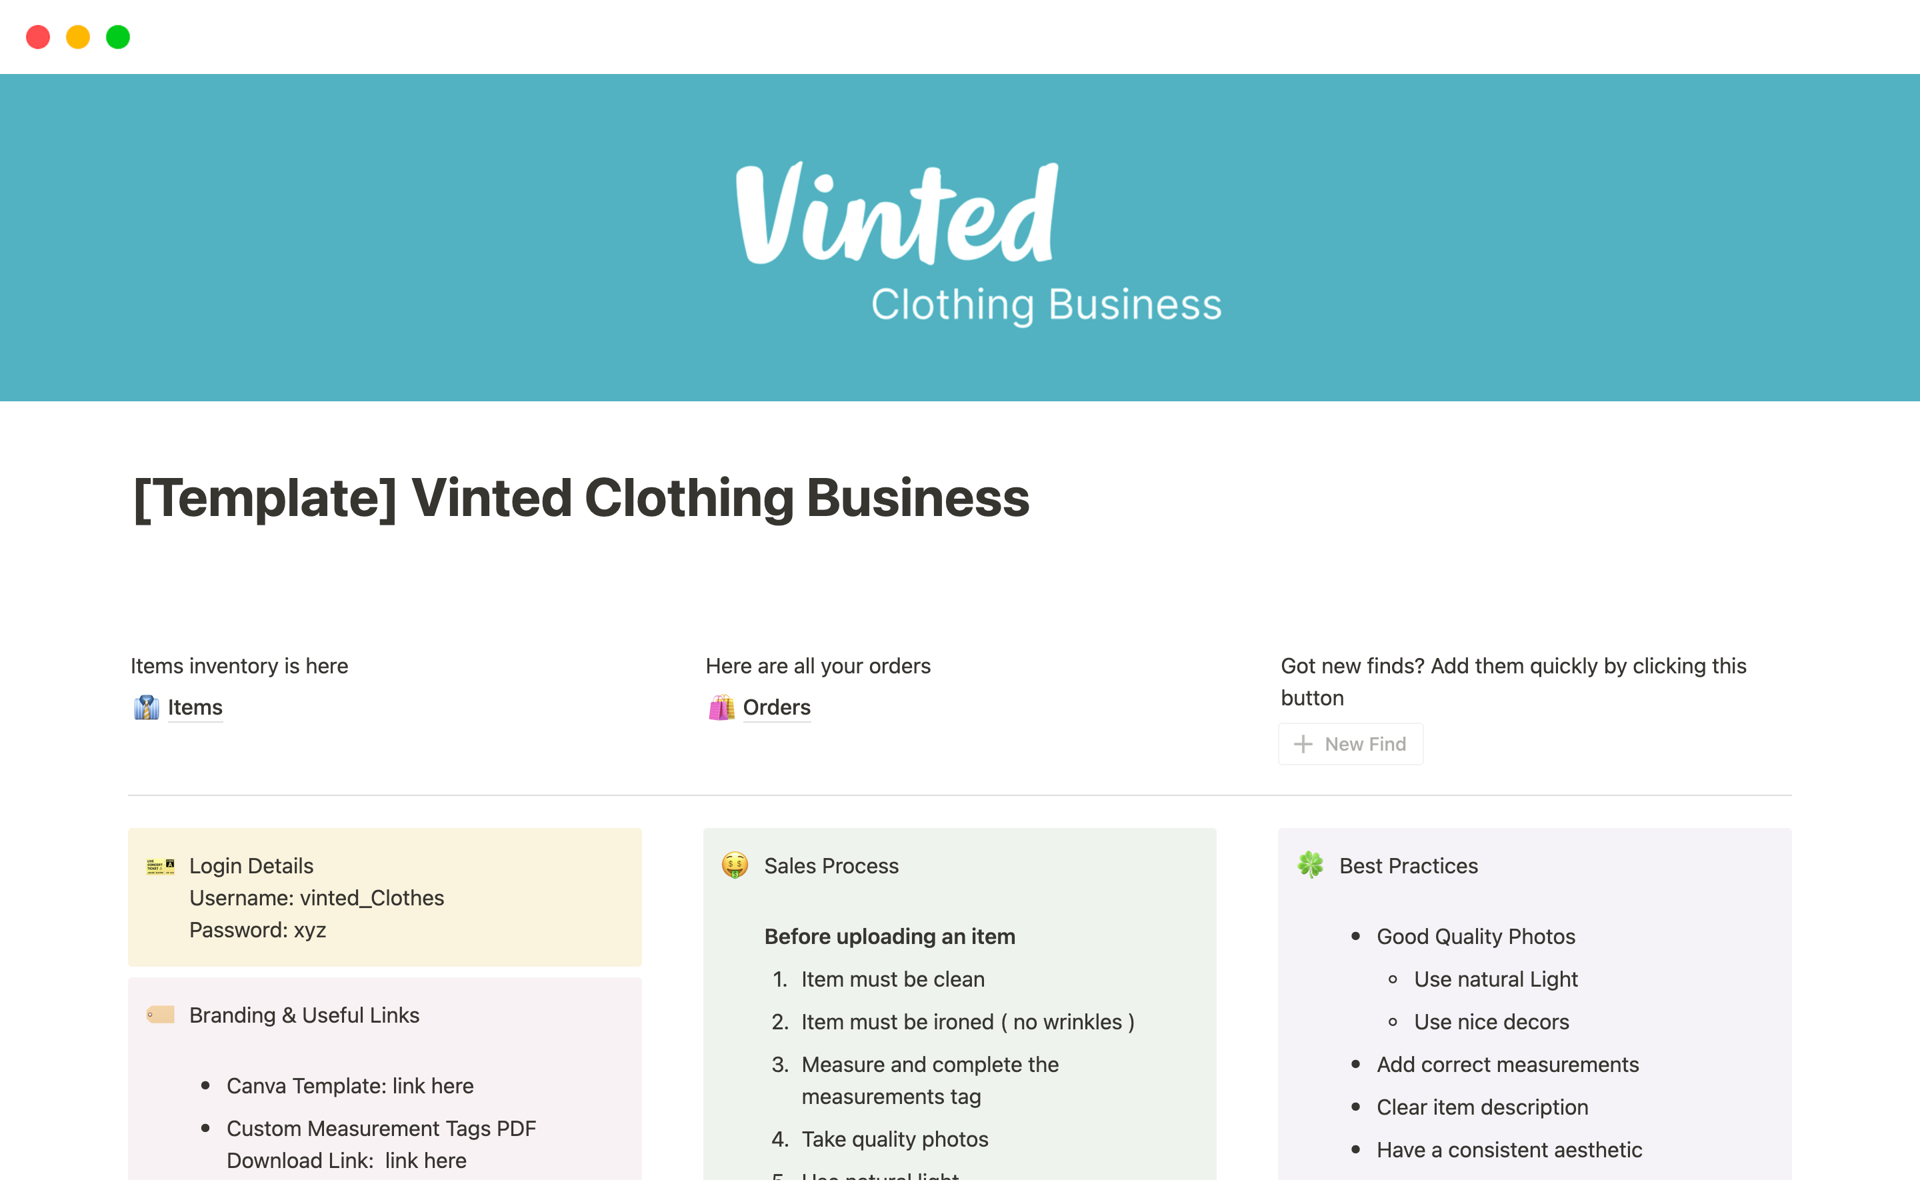 Vista previa de una plantilla para Vinted Clothing Business